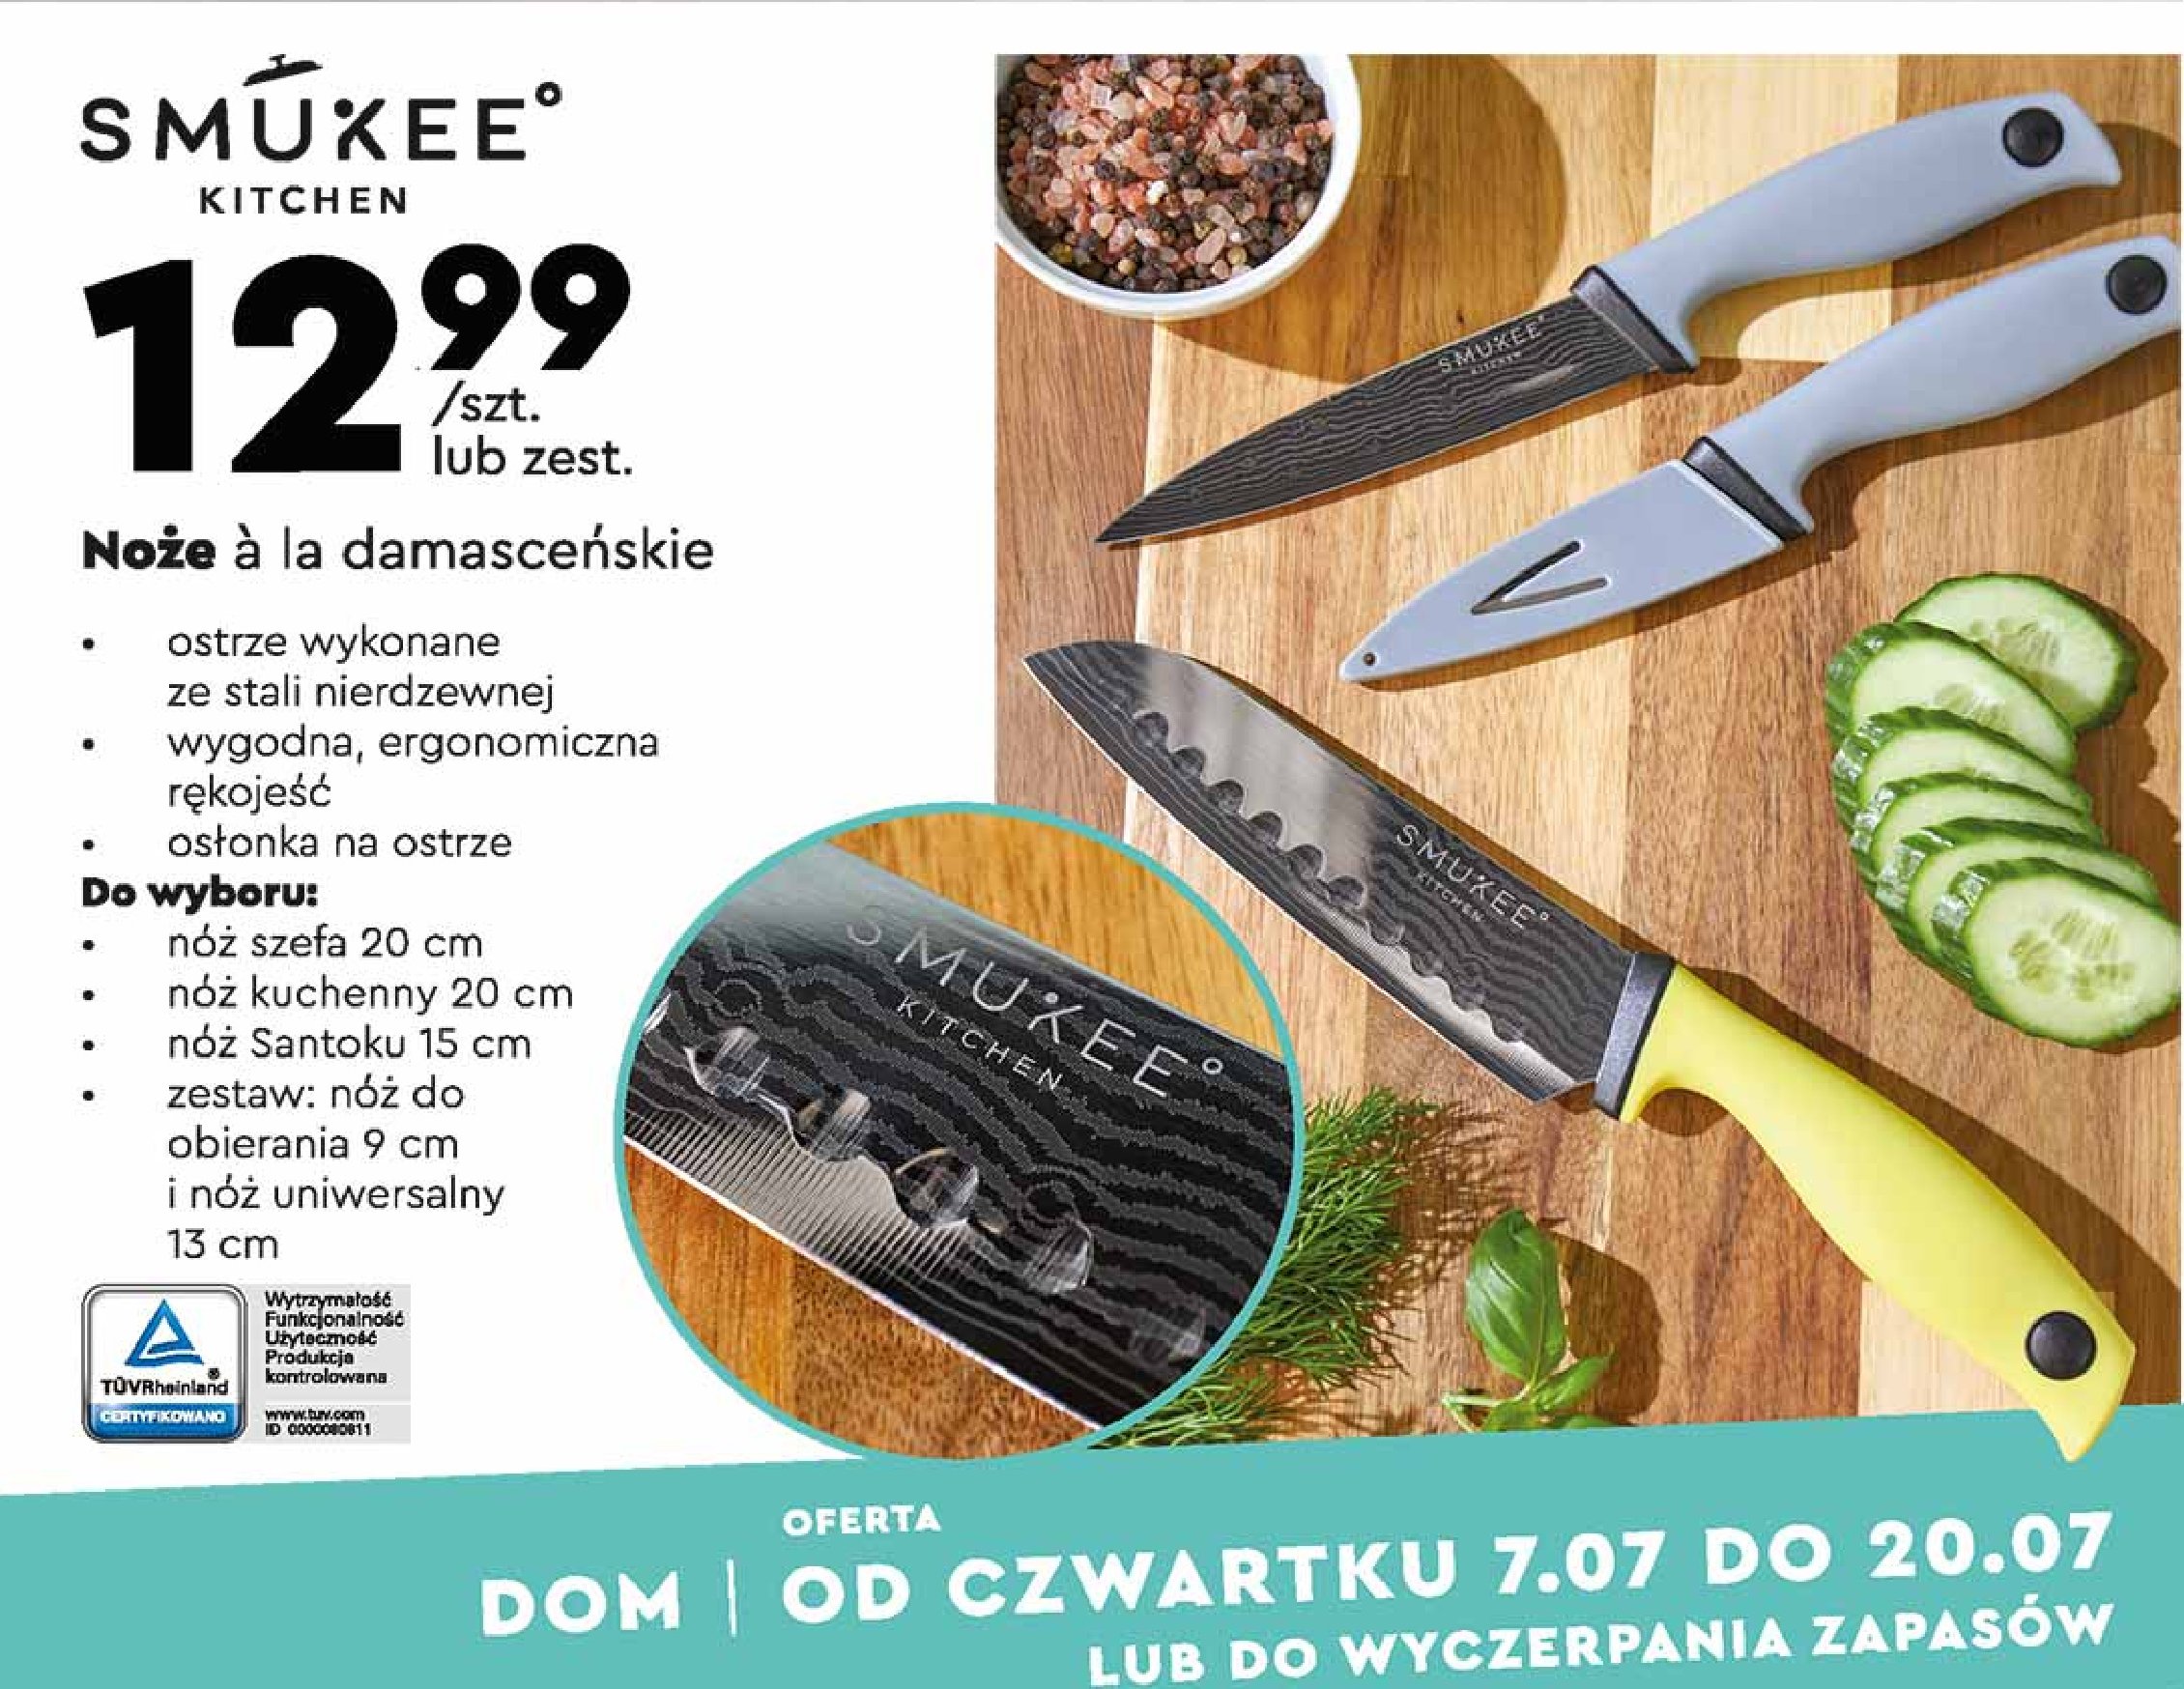 Nóż santoku ala damasceński 15 cm Smukee kitchen promocje